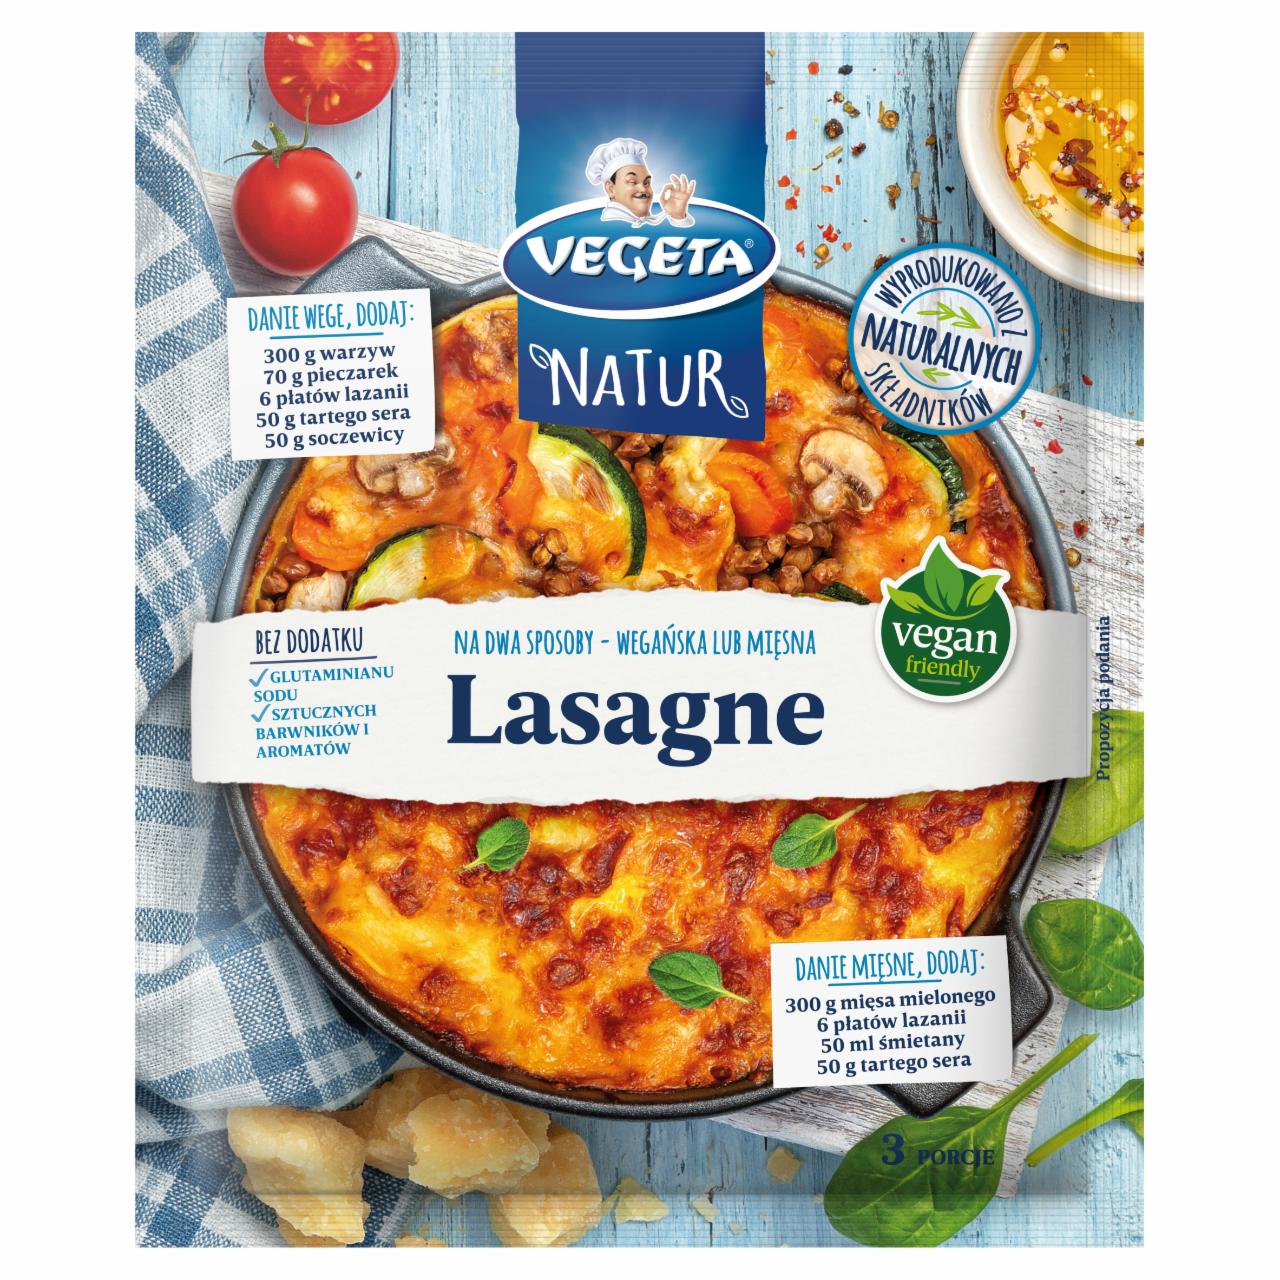 Zdjęcia - Vegeta Natur Mieszanka warzyw ziół i przypraw do dań lasagne 45 g